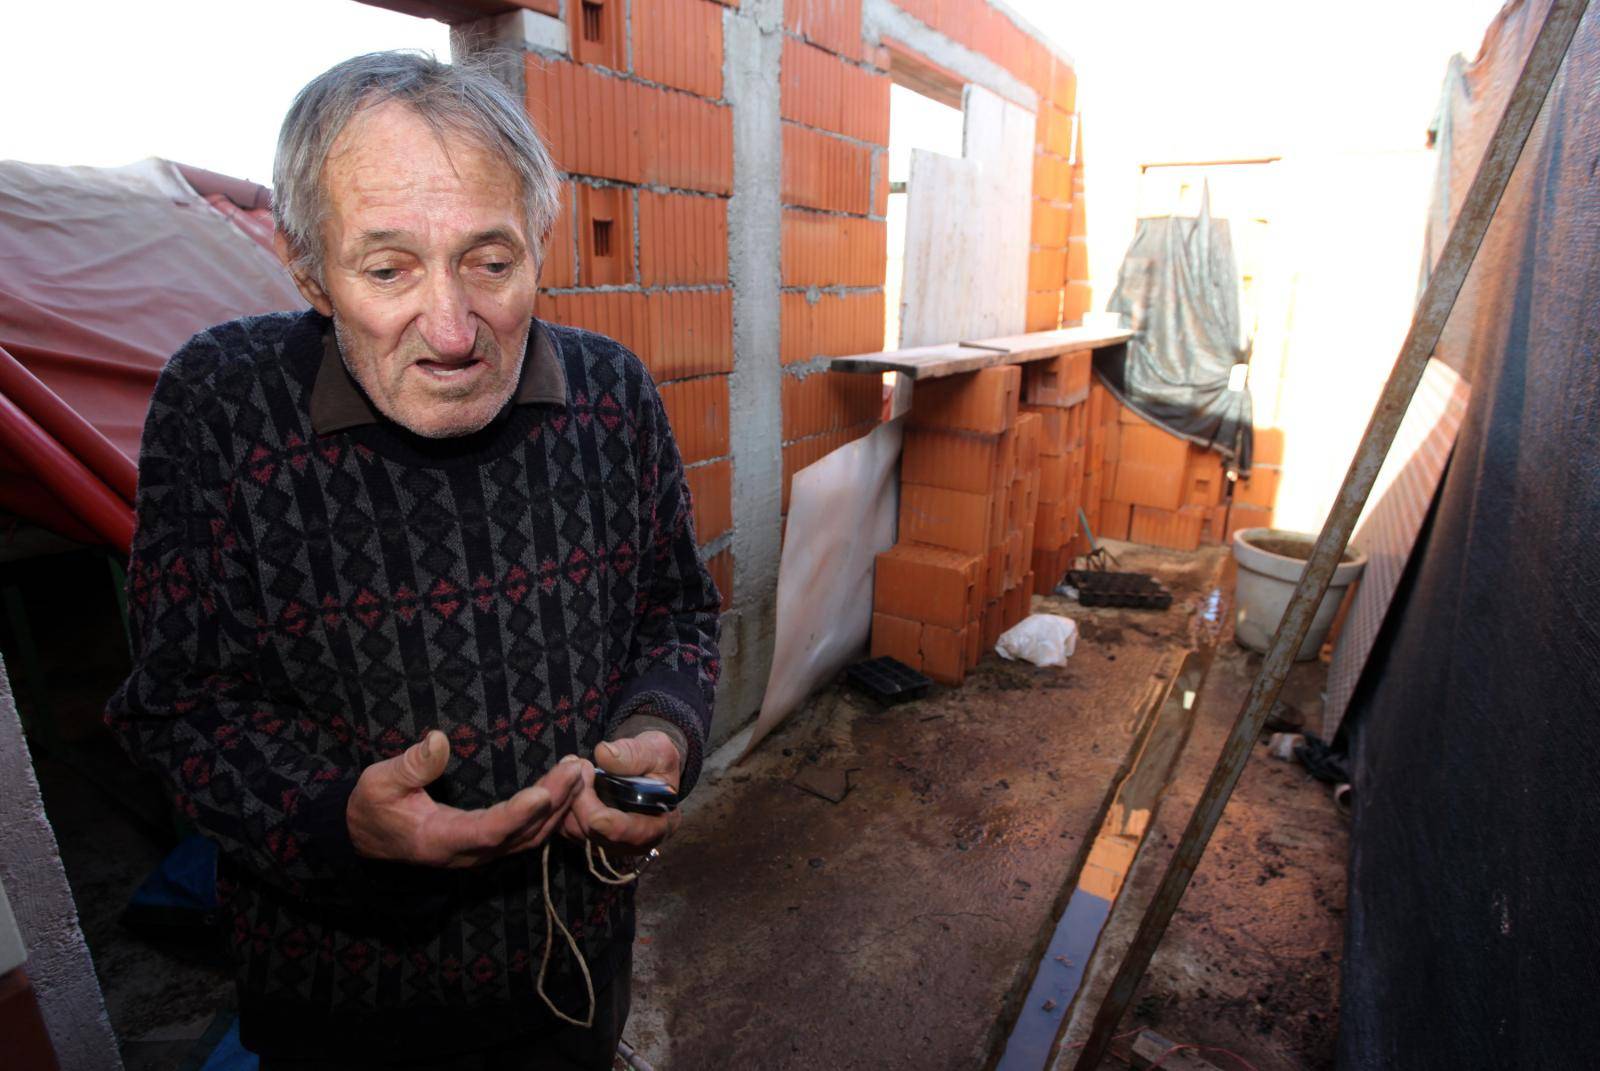 'Neću više, obećavam!': Ima 80 godina i sadi marihuanu u vrtu